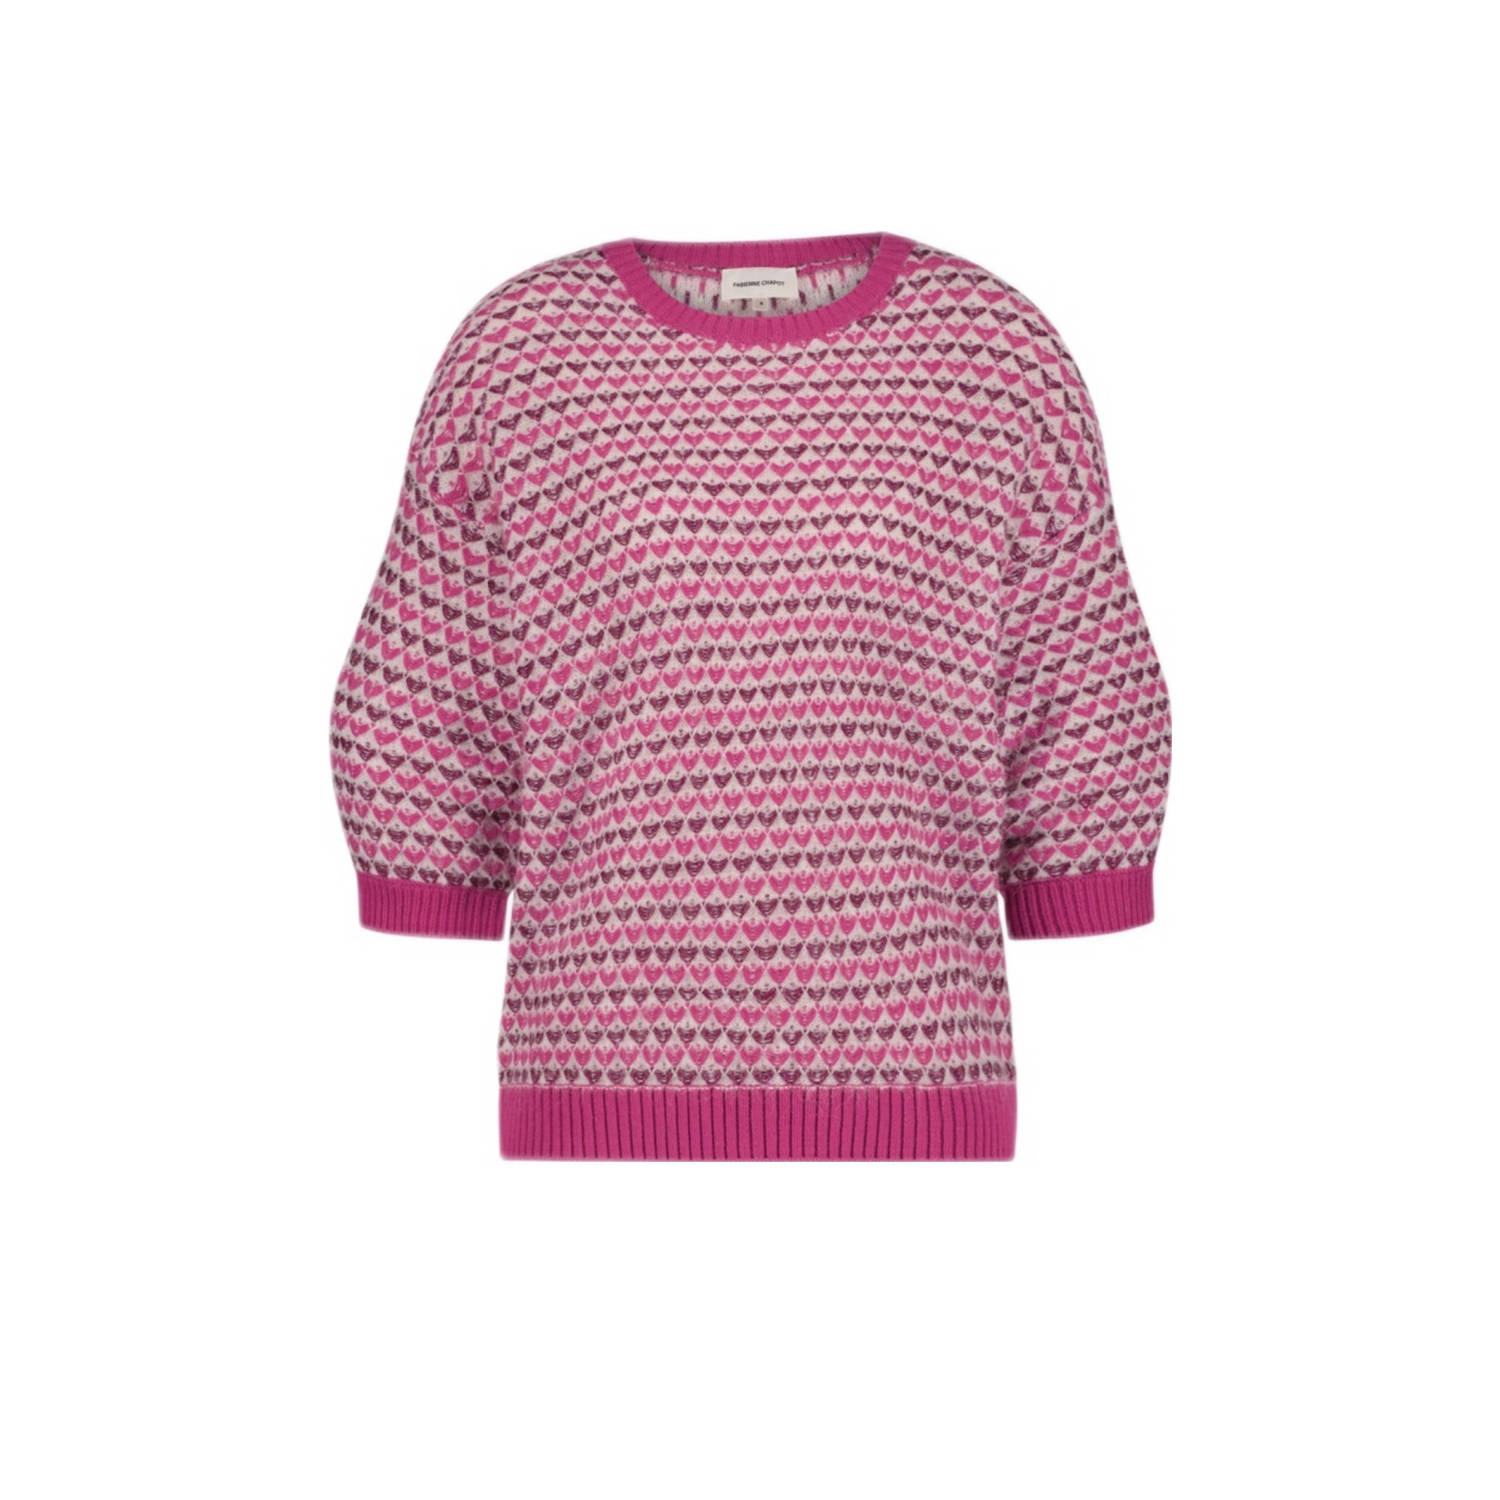 Fabienne Chapot gebreide trui Rose met wol en hartjes roze donkerroze ecru